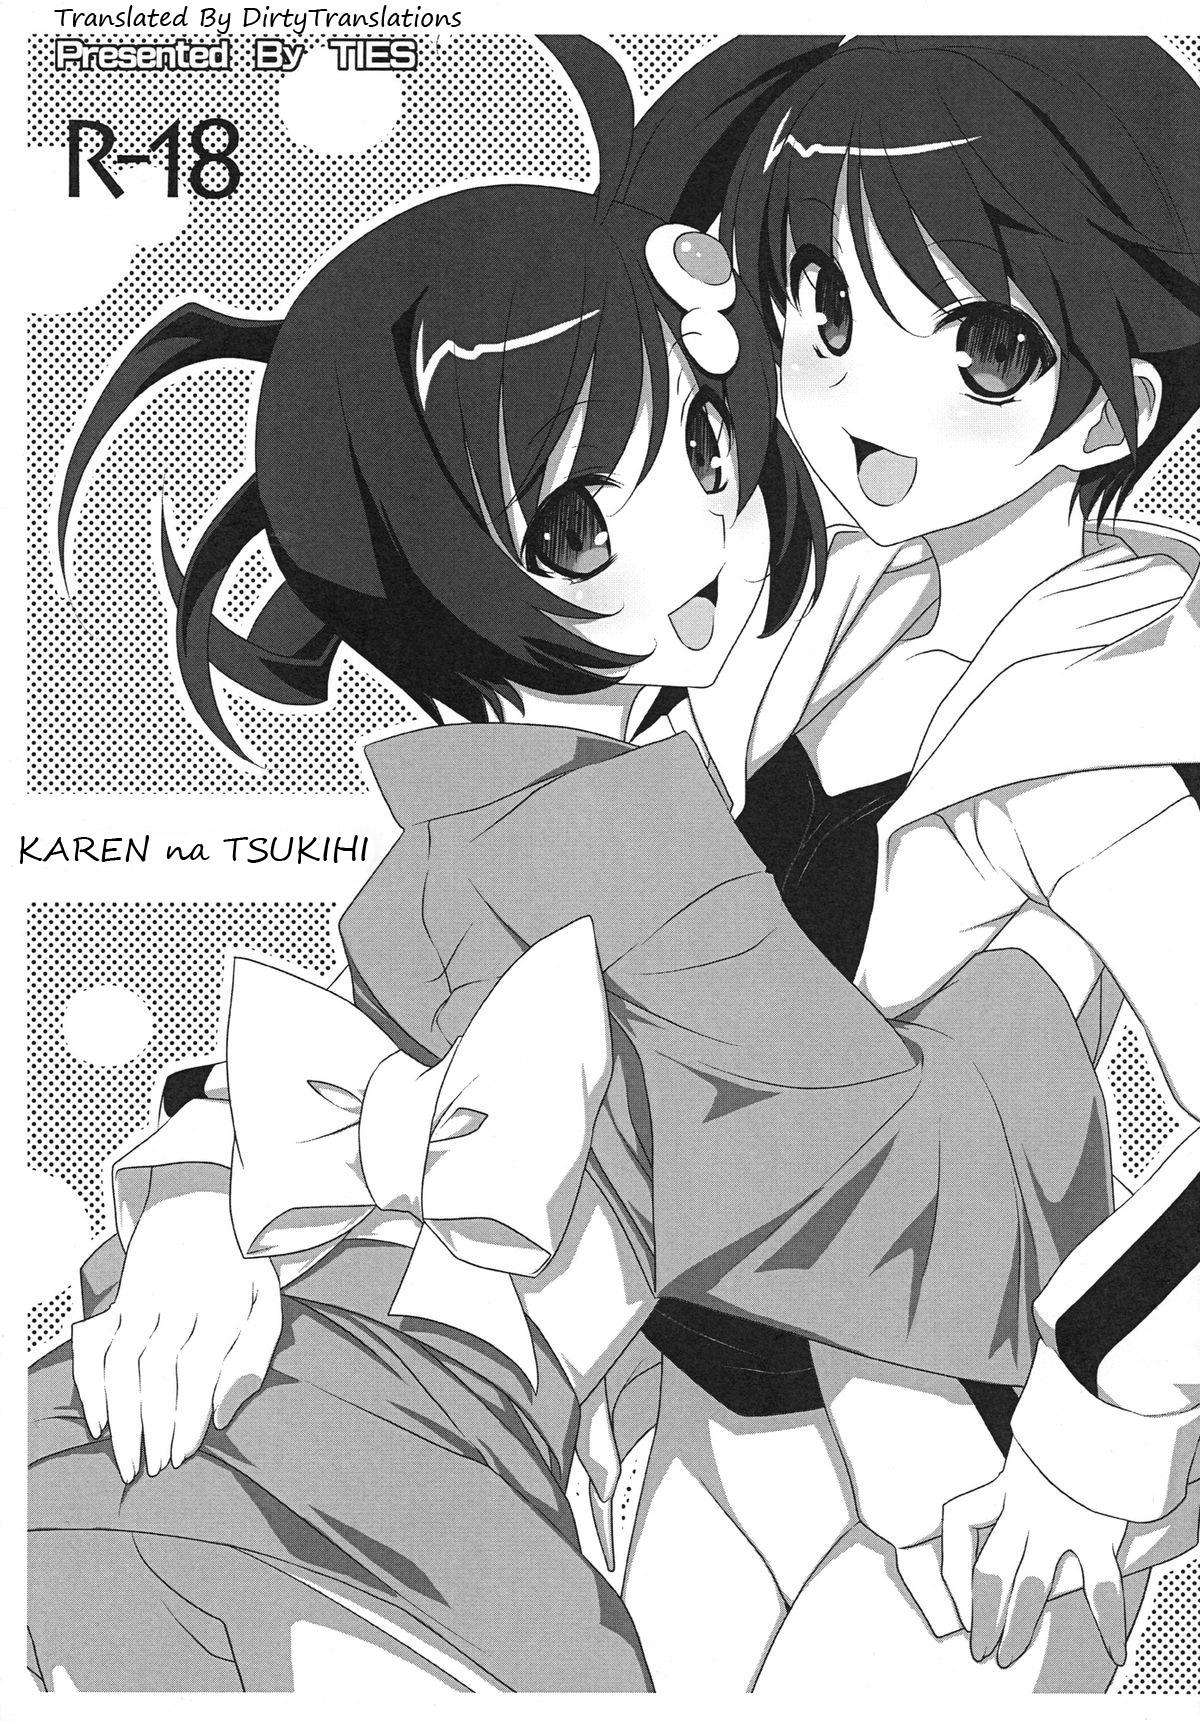 Karen na Tsukihi 0